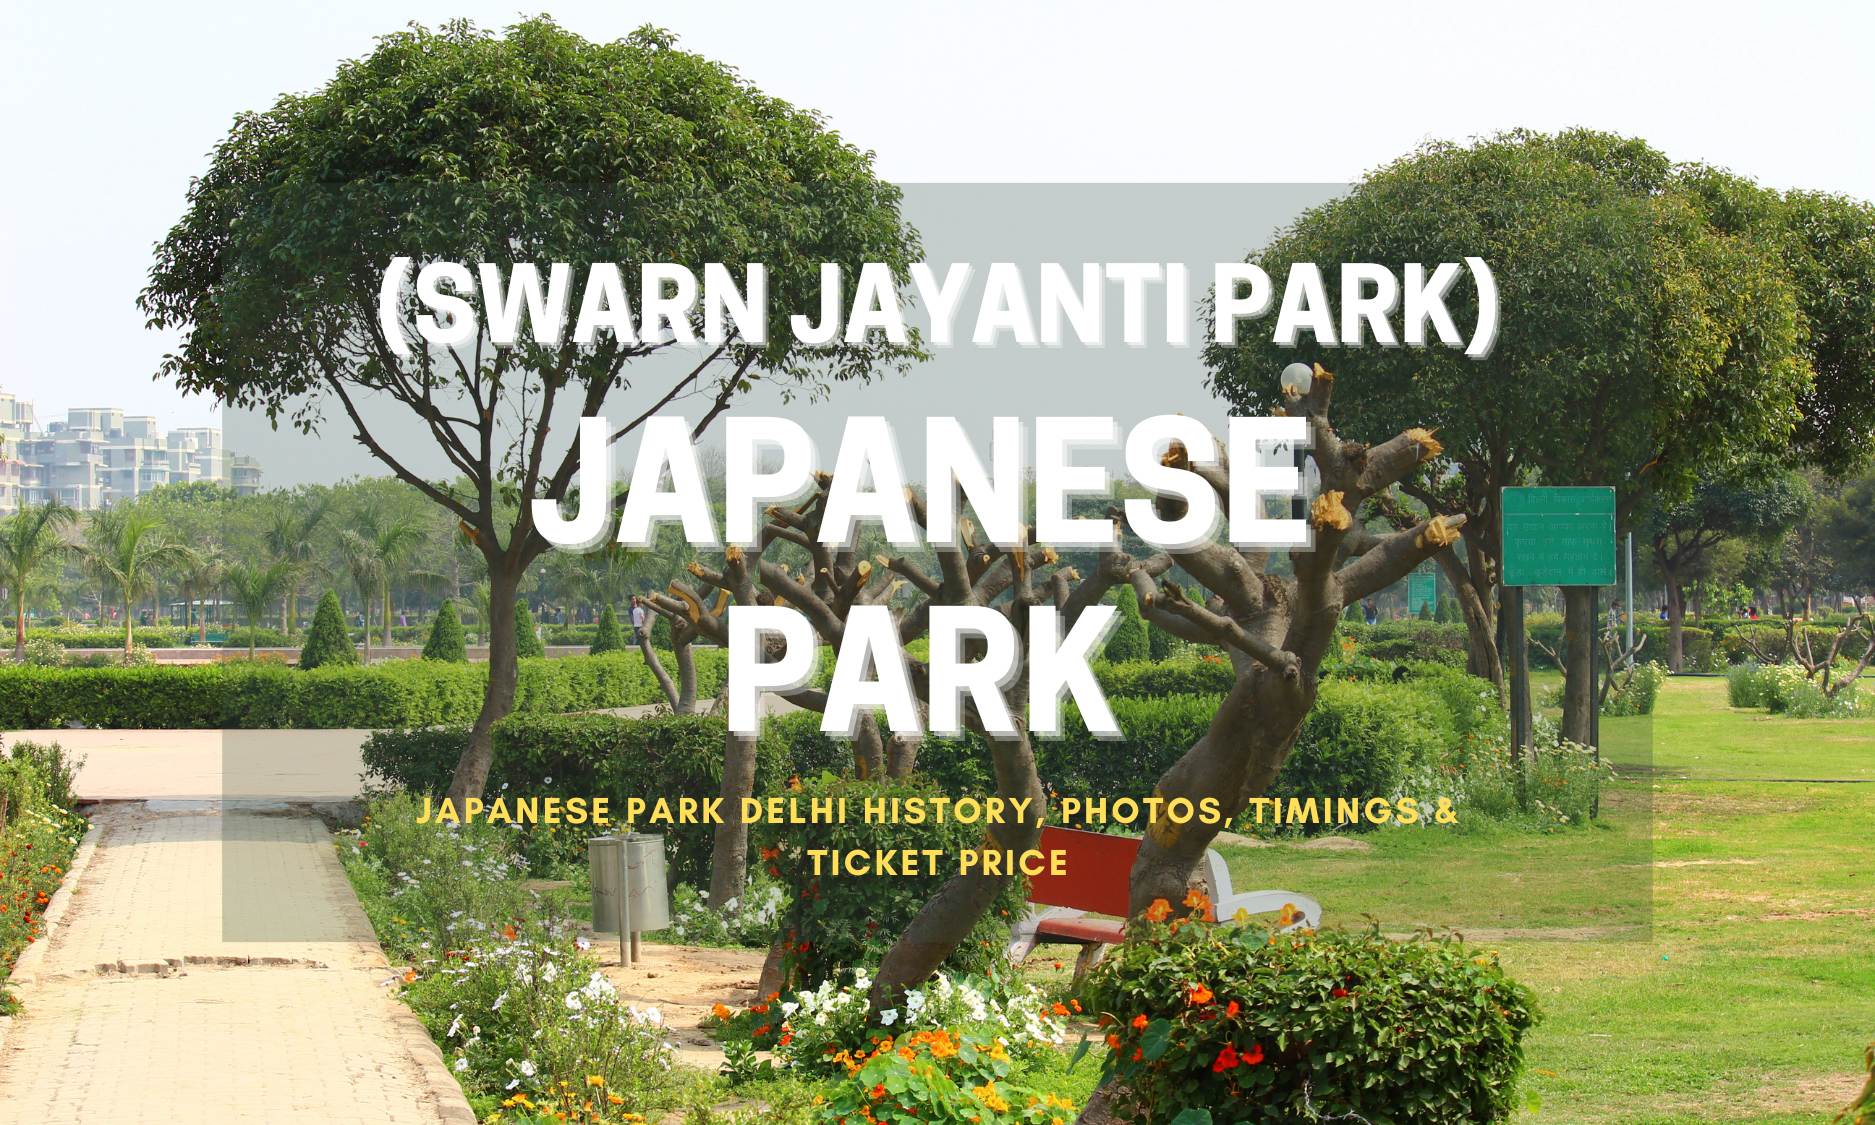 Japanese Park Rohini (SWARN JAYANTI PARK), Photos, Timings & Ticket Price (2023)